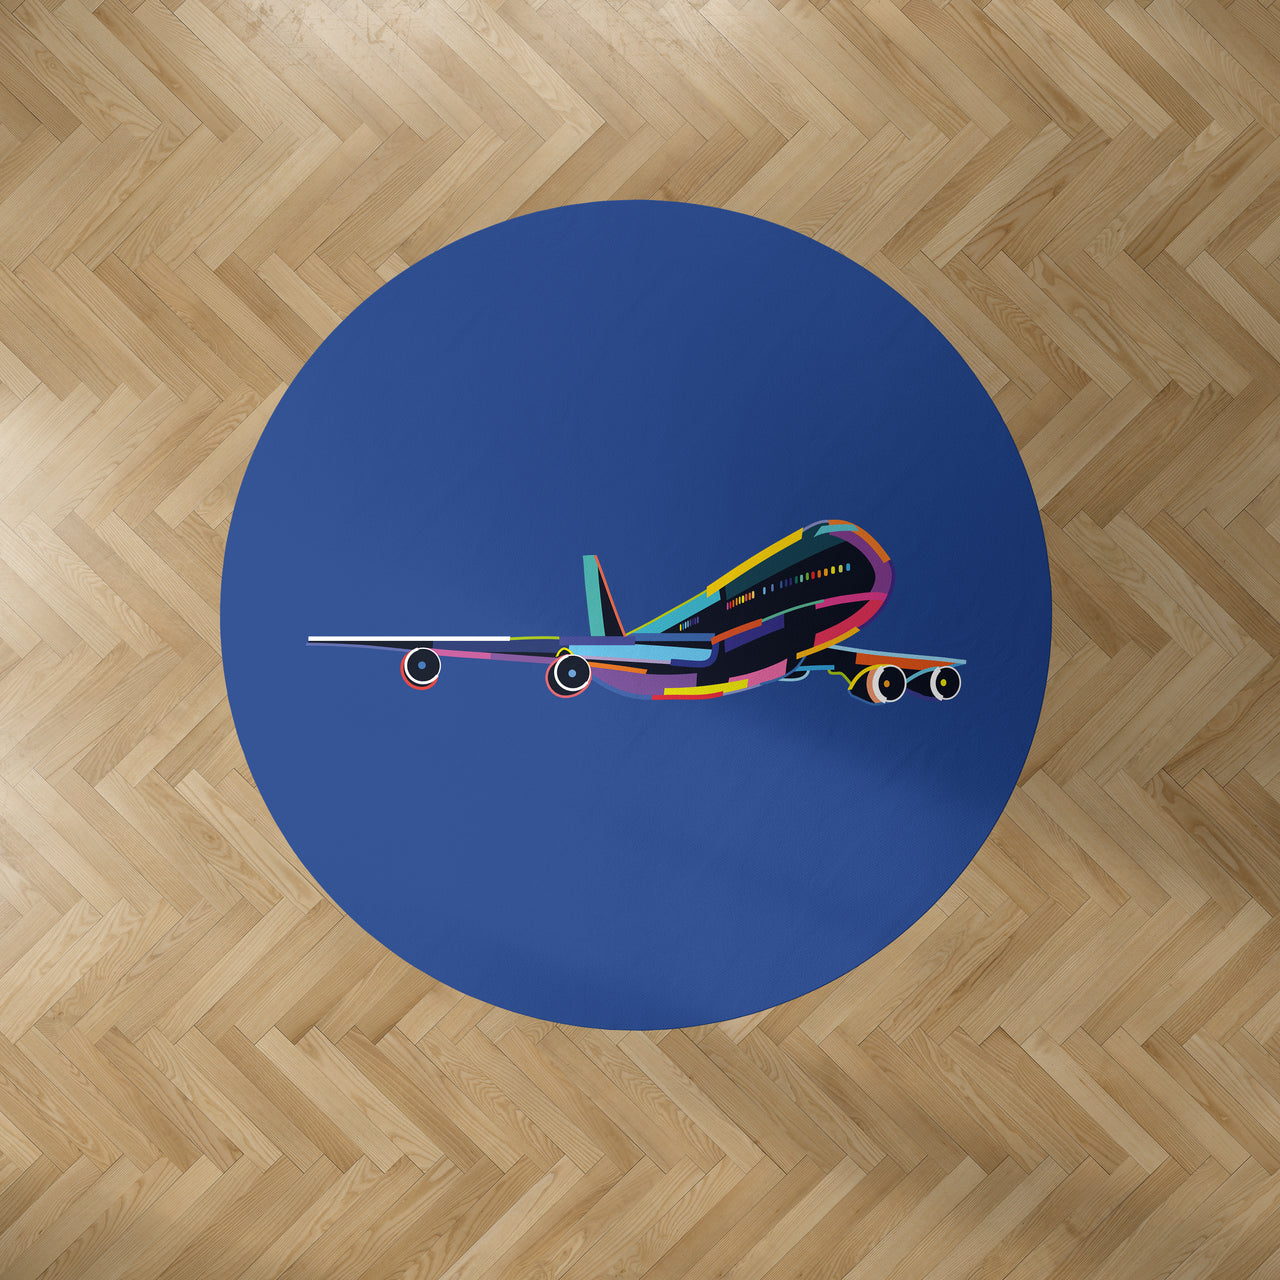 Multicolor Airplane Designed Carpet & Floor Mats (Round)